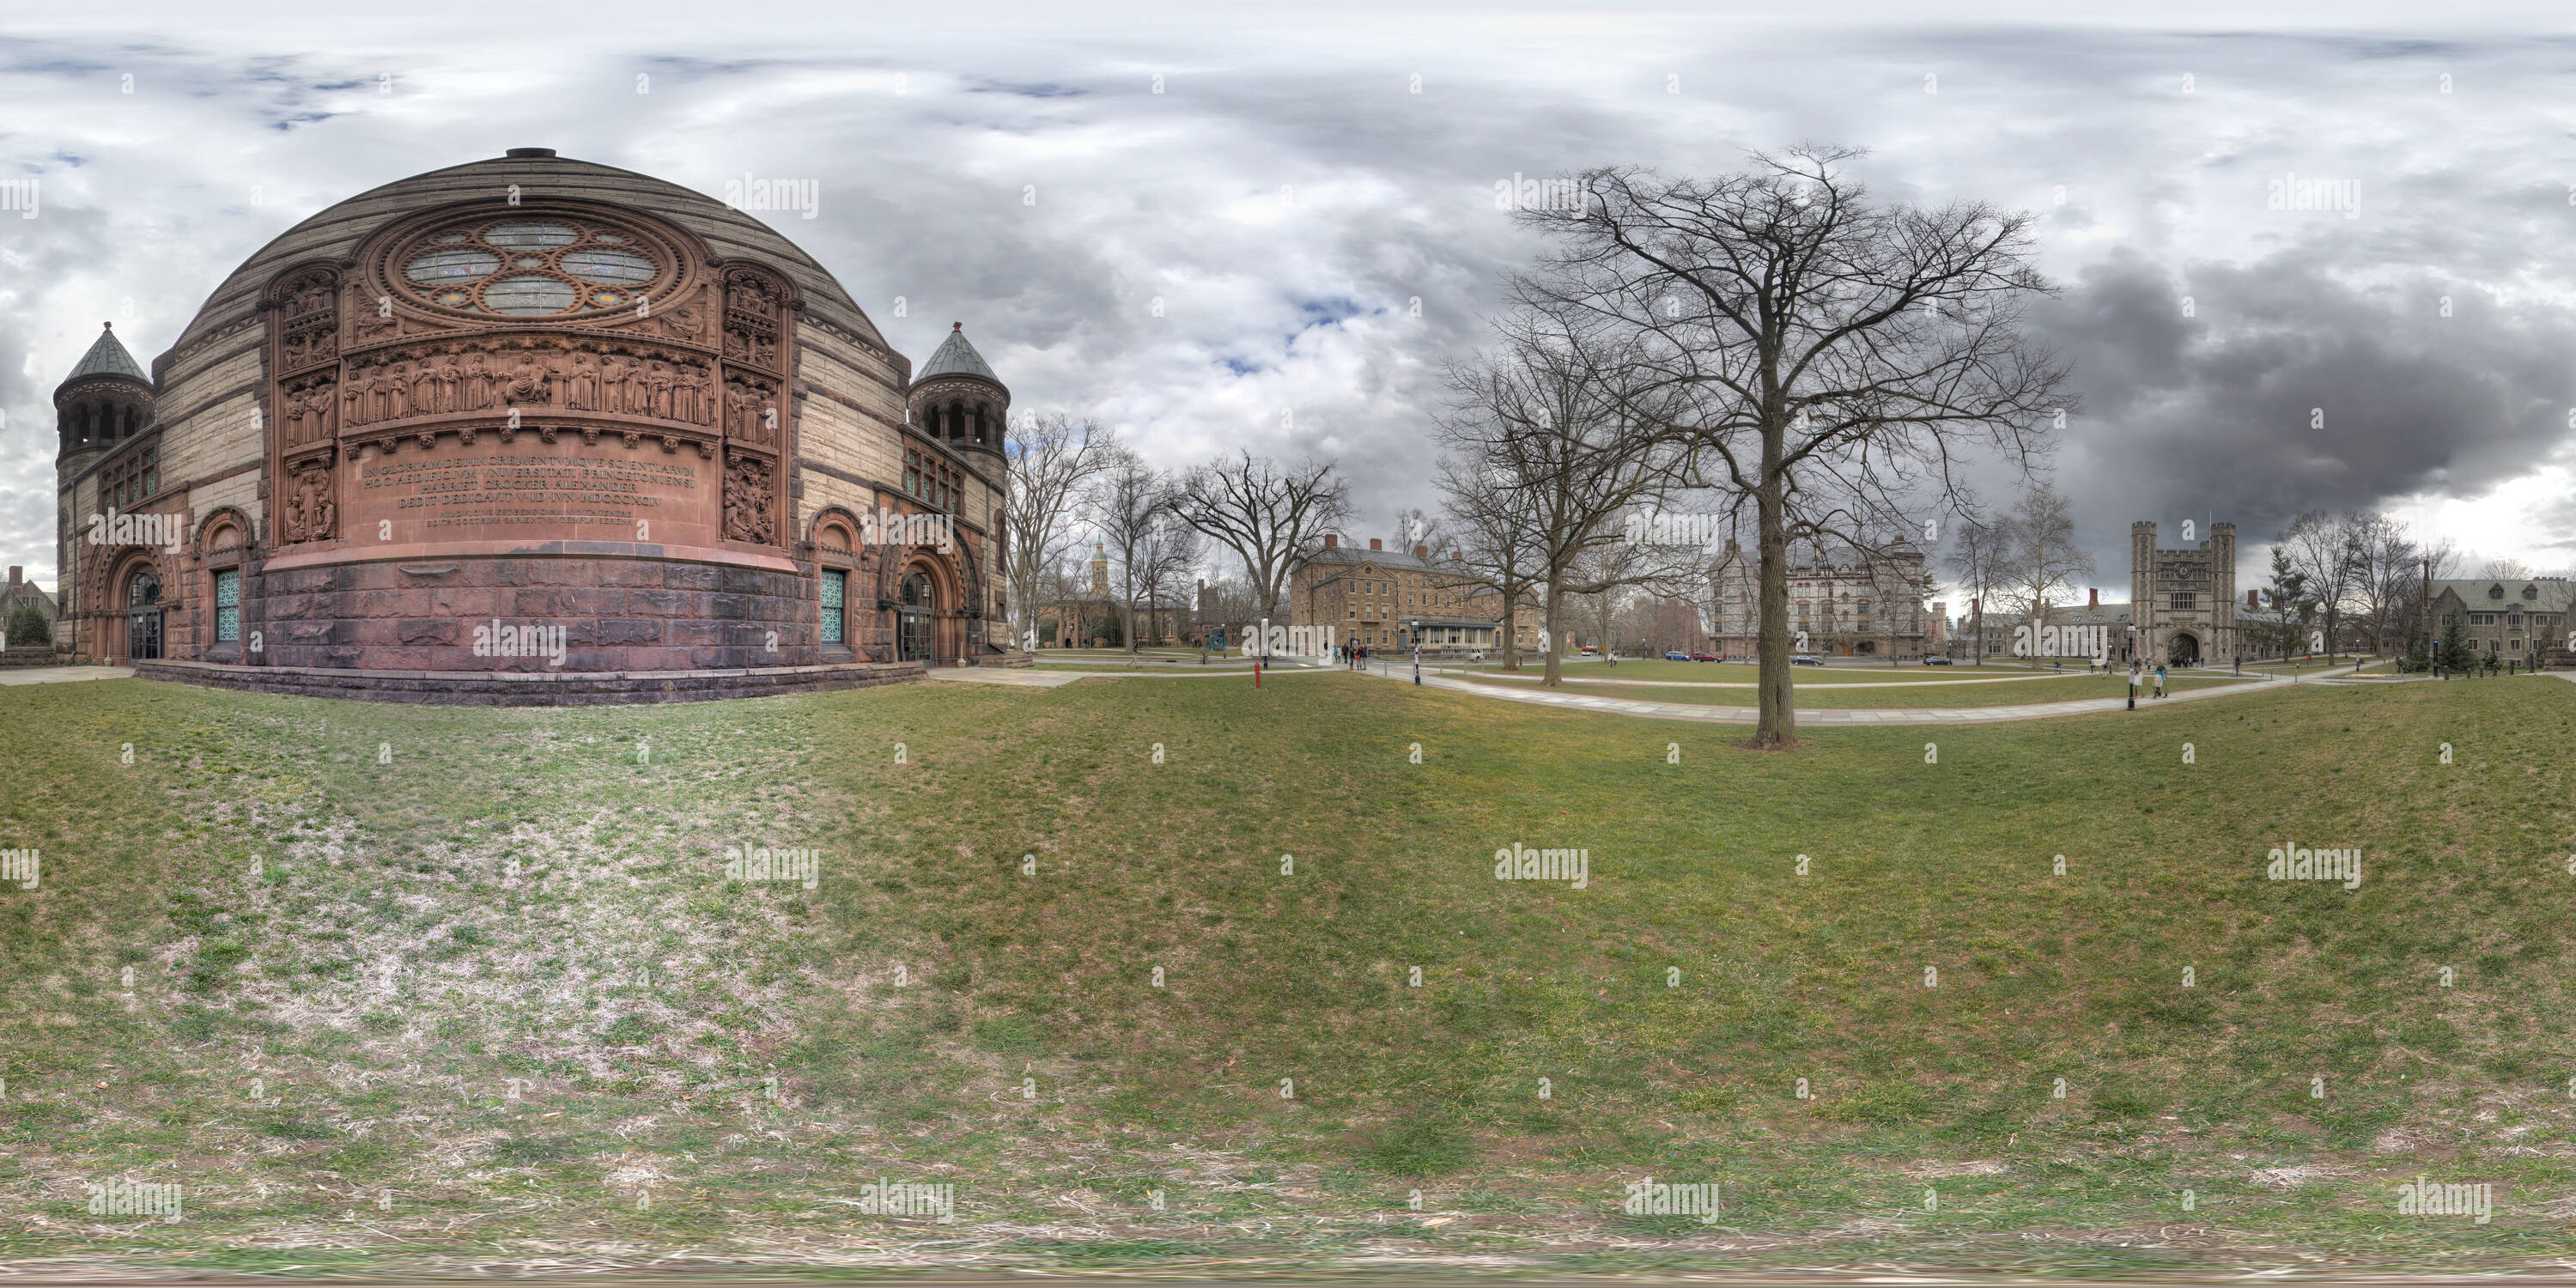 Vue panoramique à 360° de Alexander Hall - l'Université de Princeton